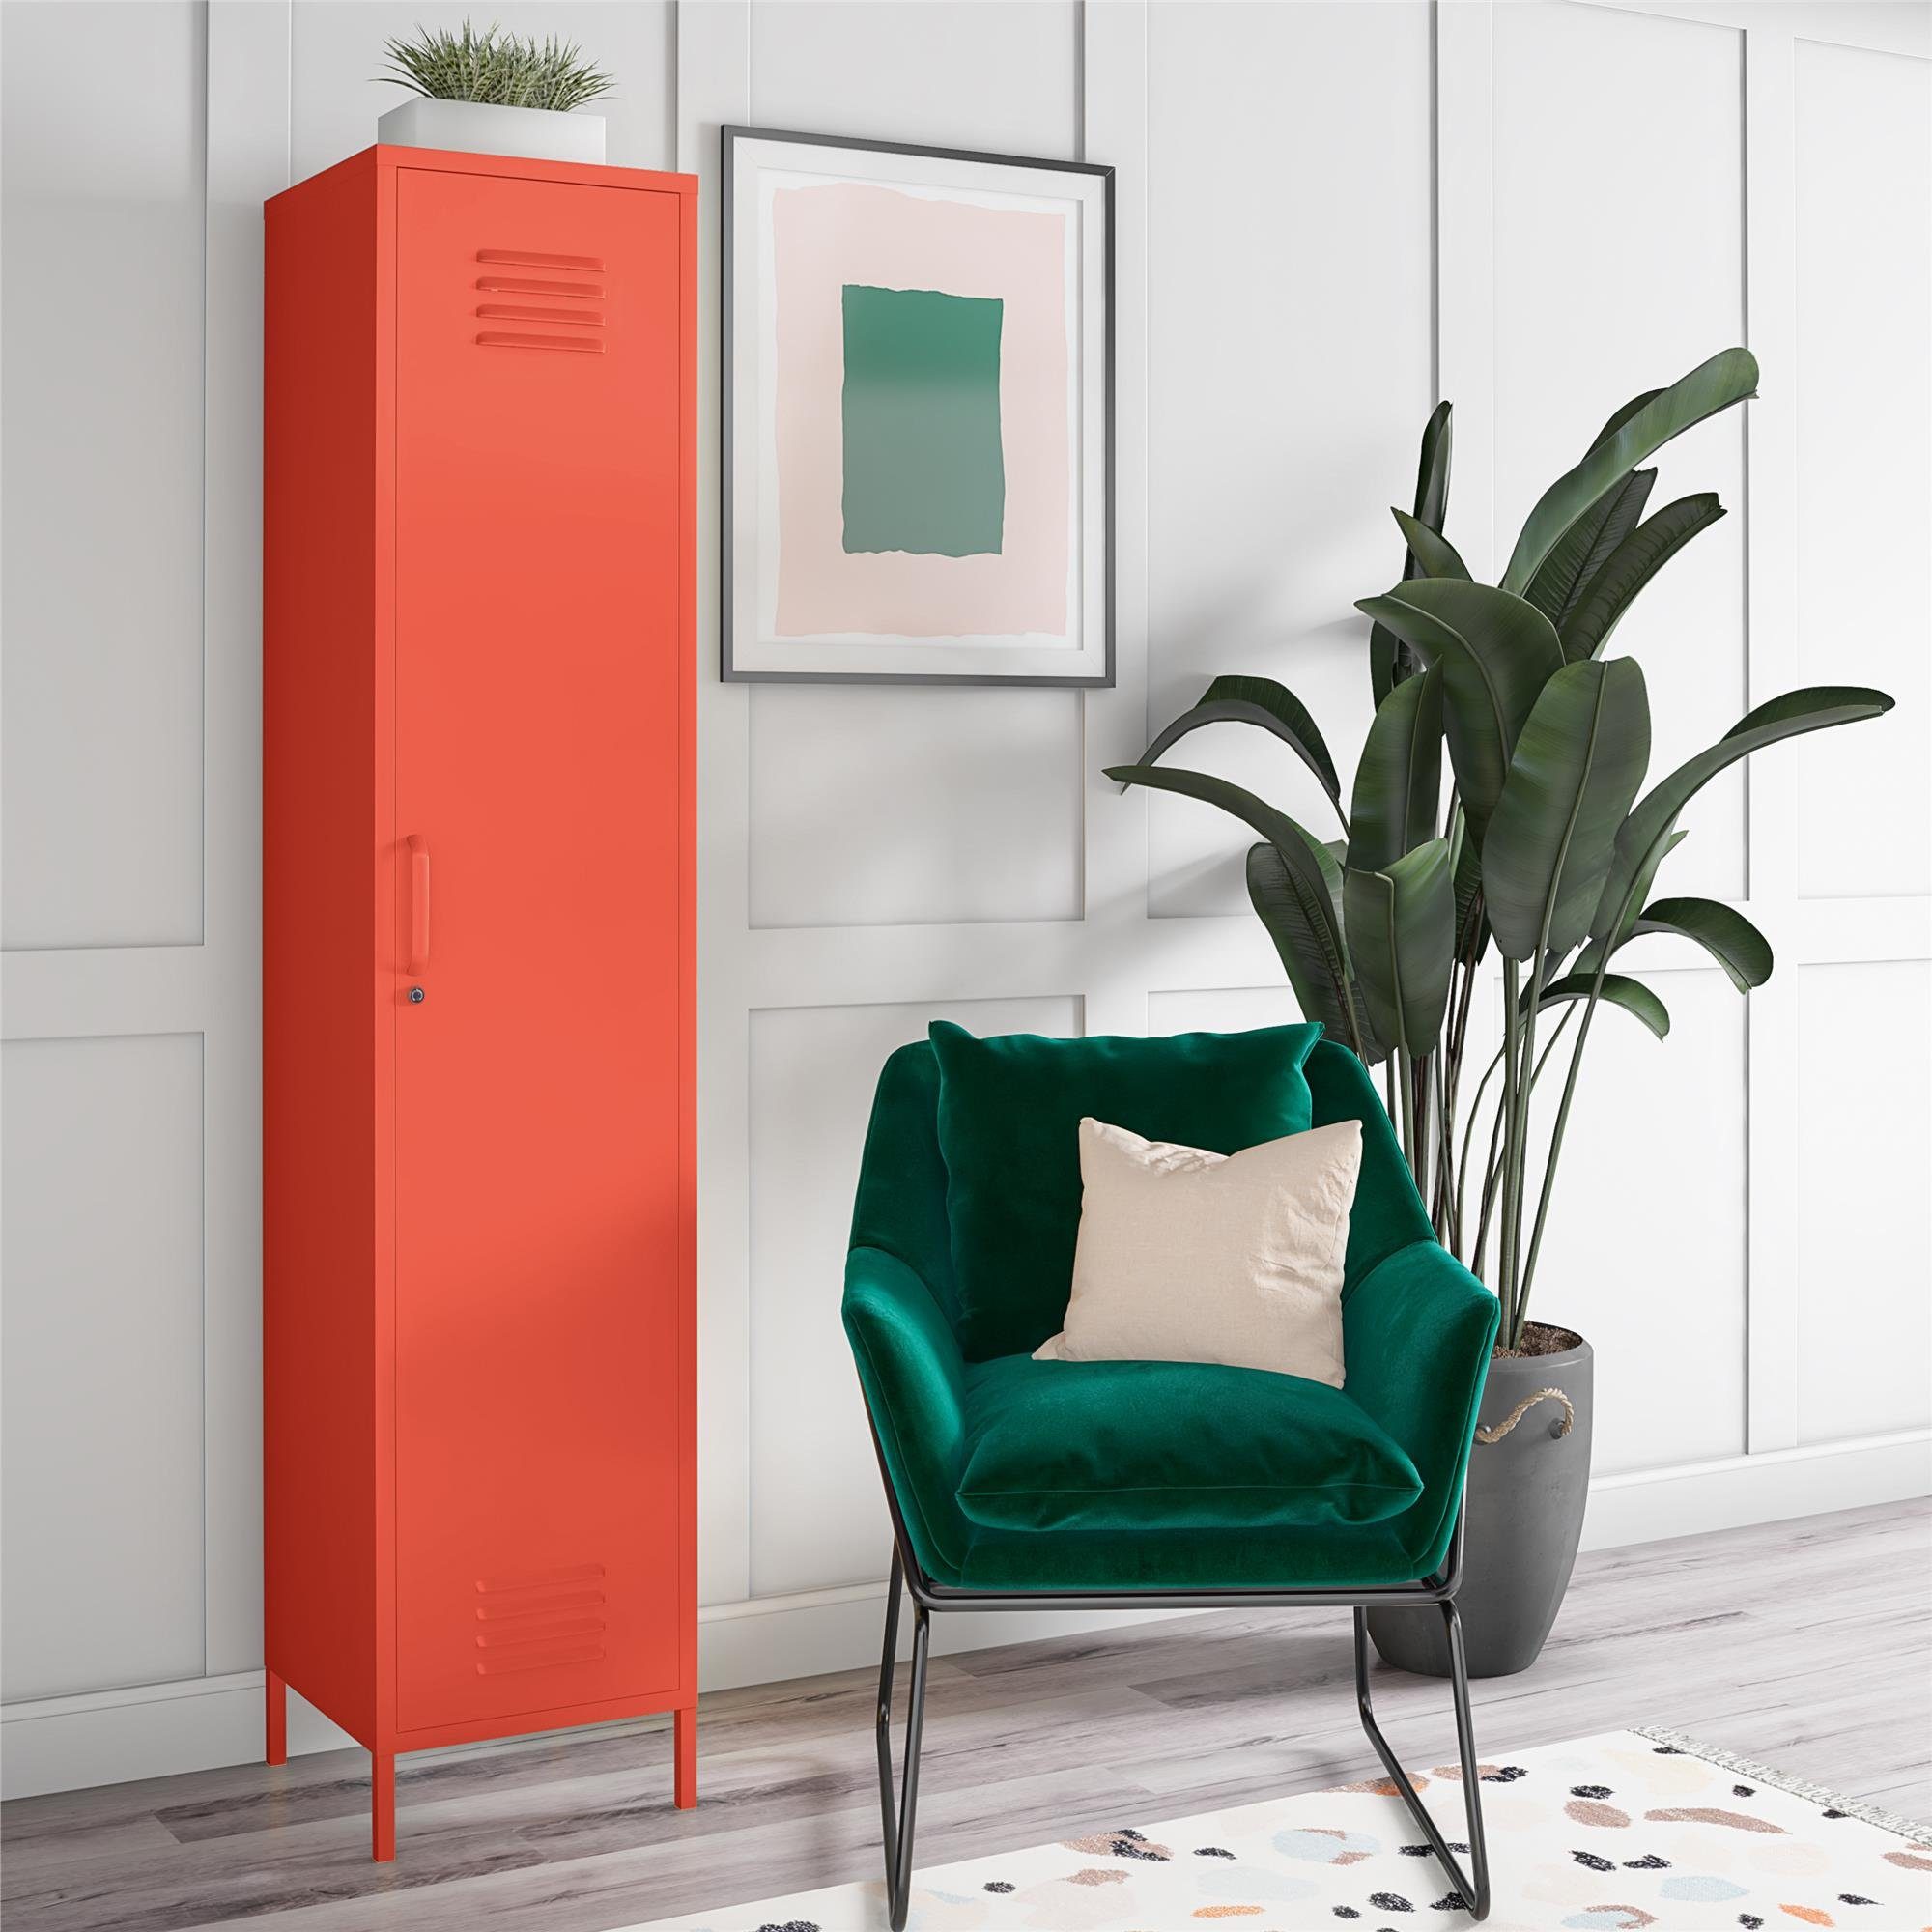 185 Spind Design, Cache orange Retro 1 Höhe cm Metallschrank, Tür, loft24